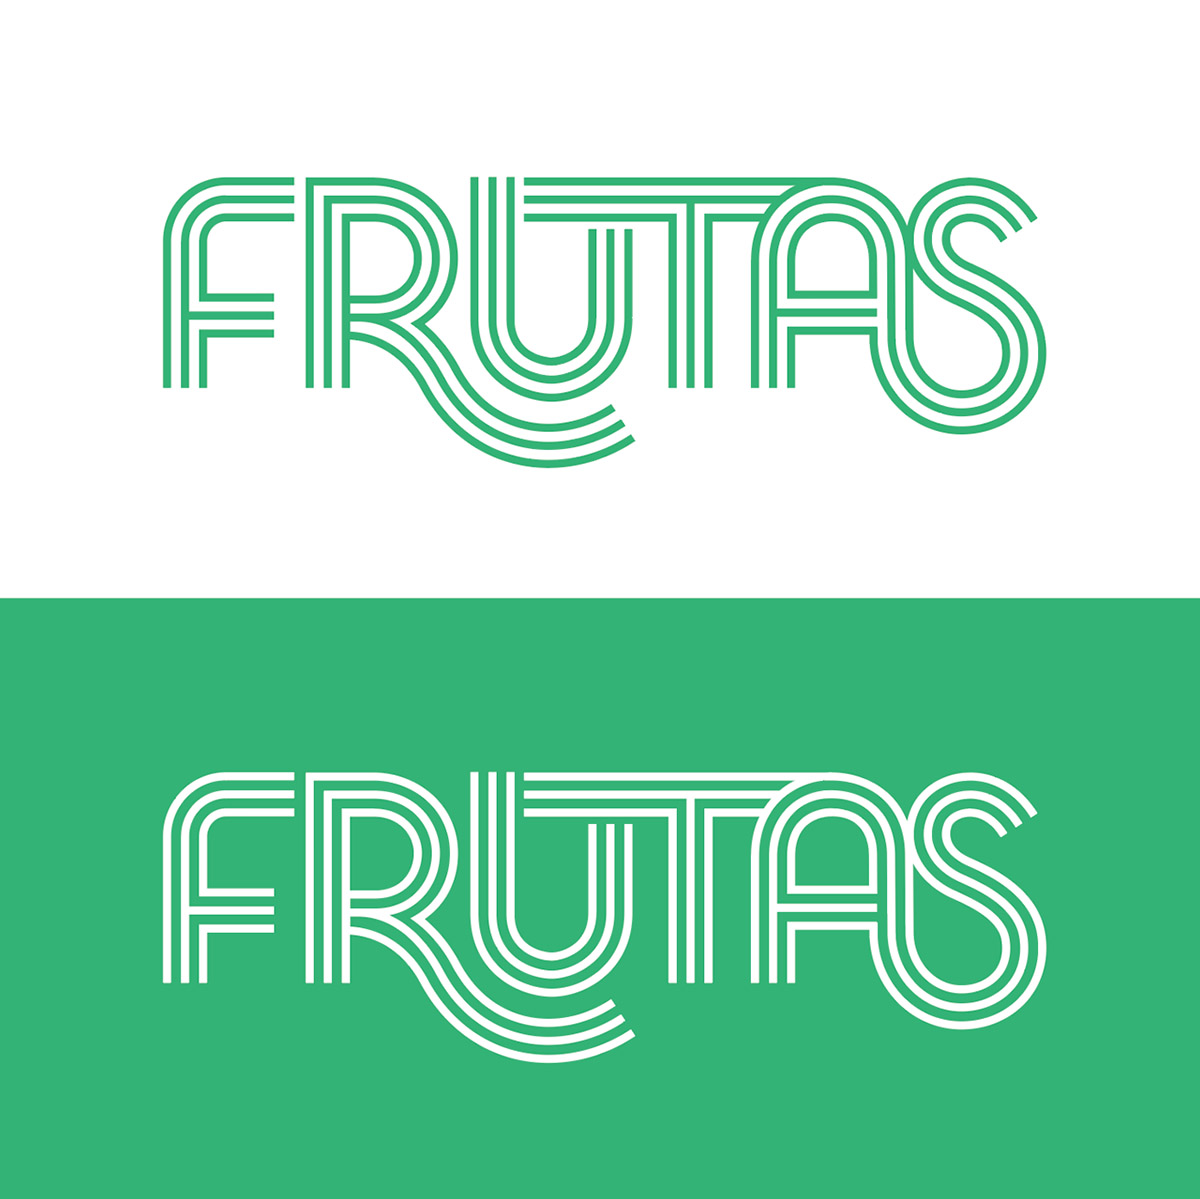 Frutas logo copy